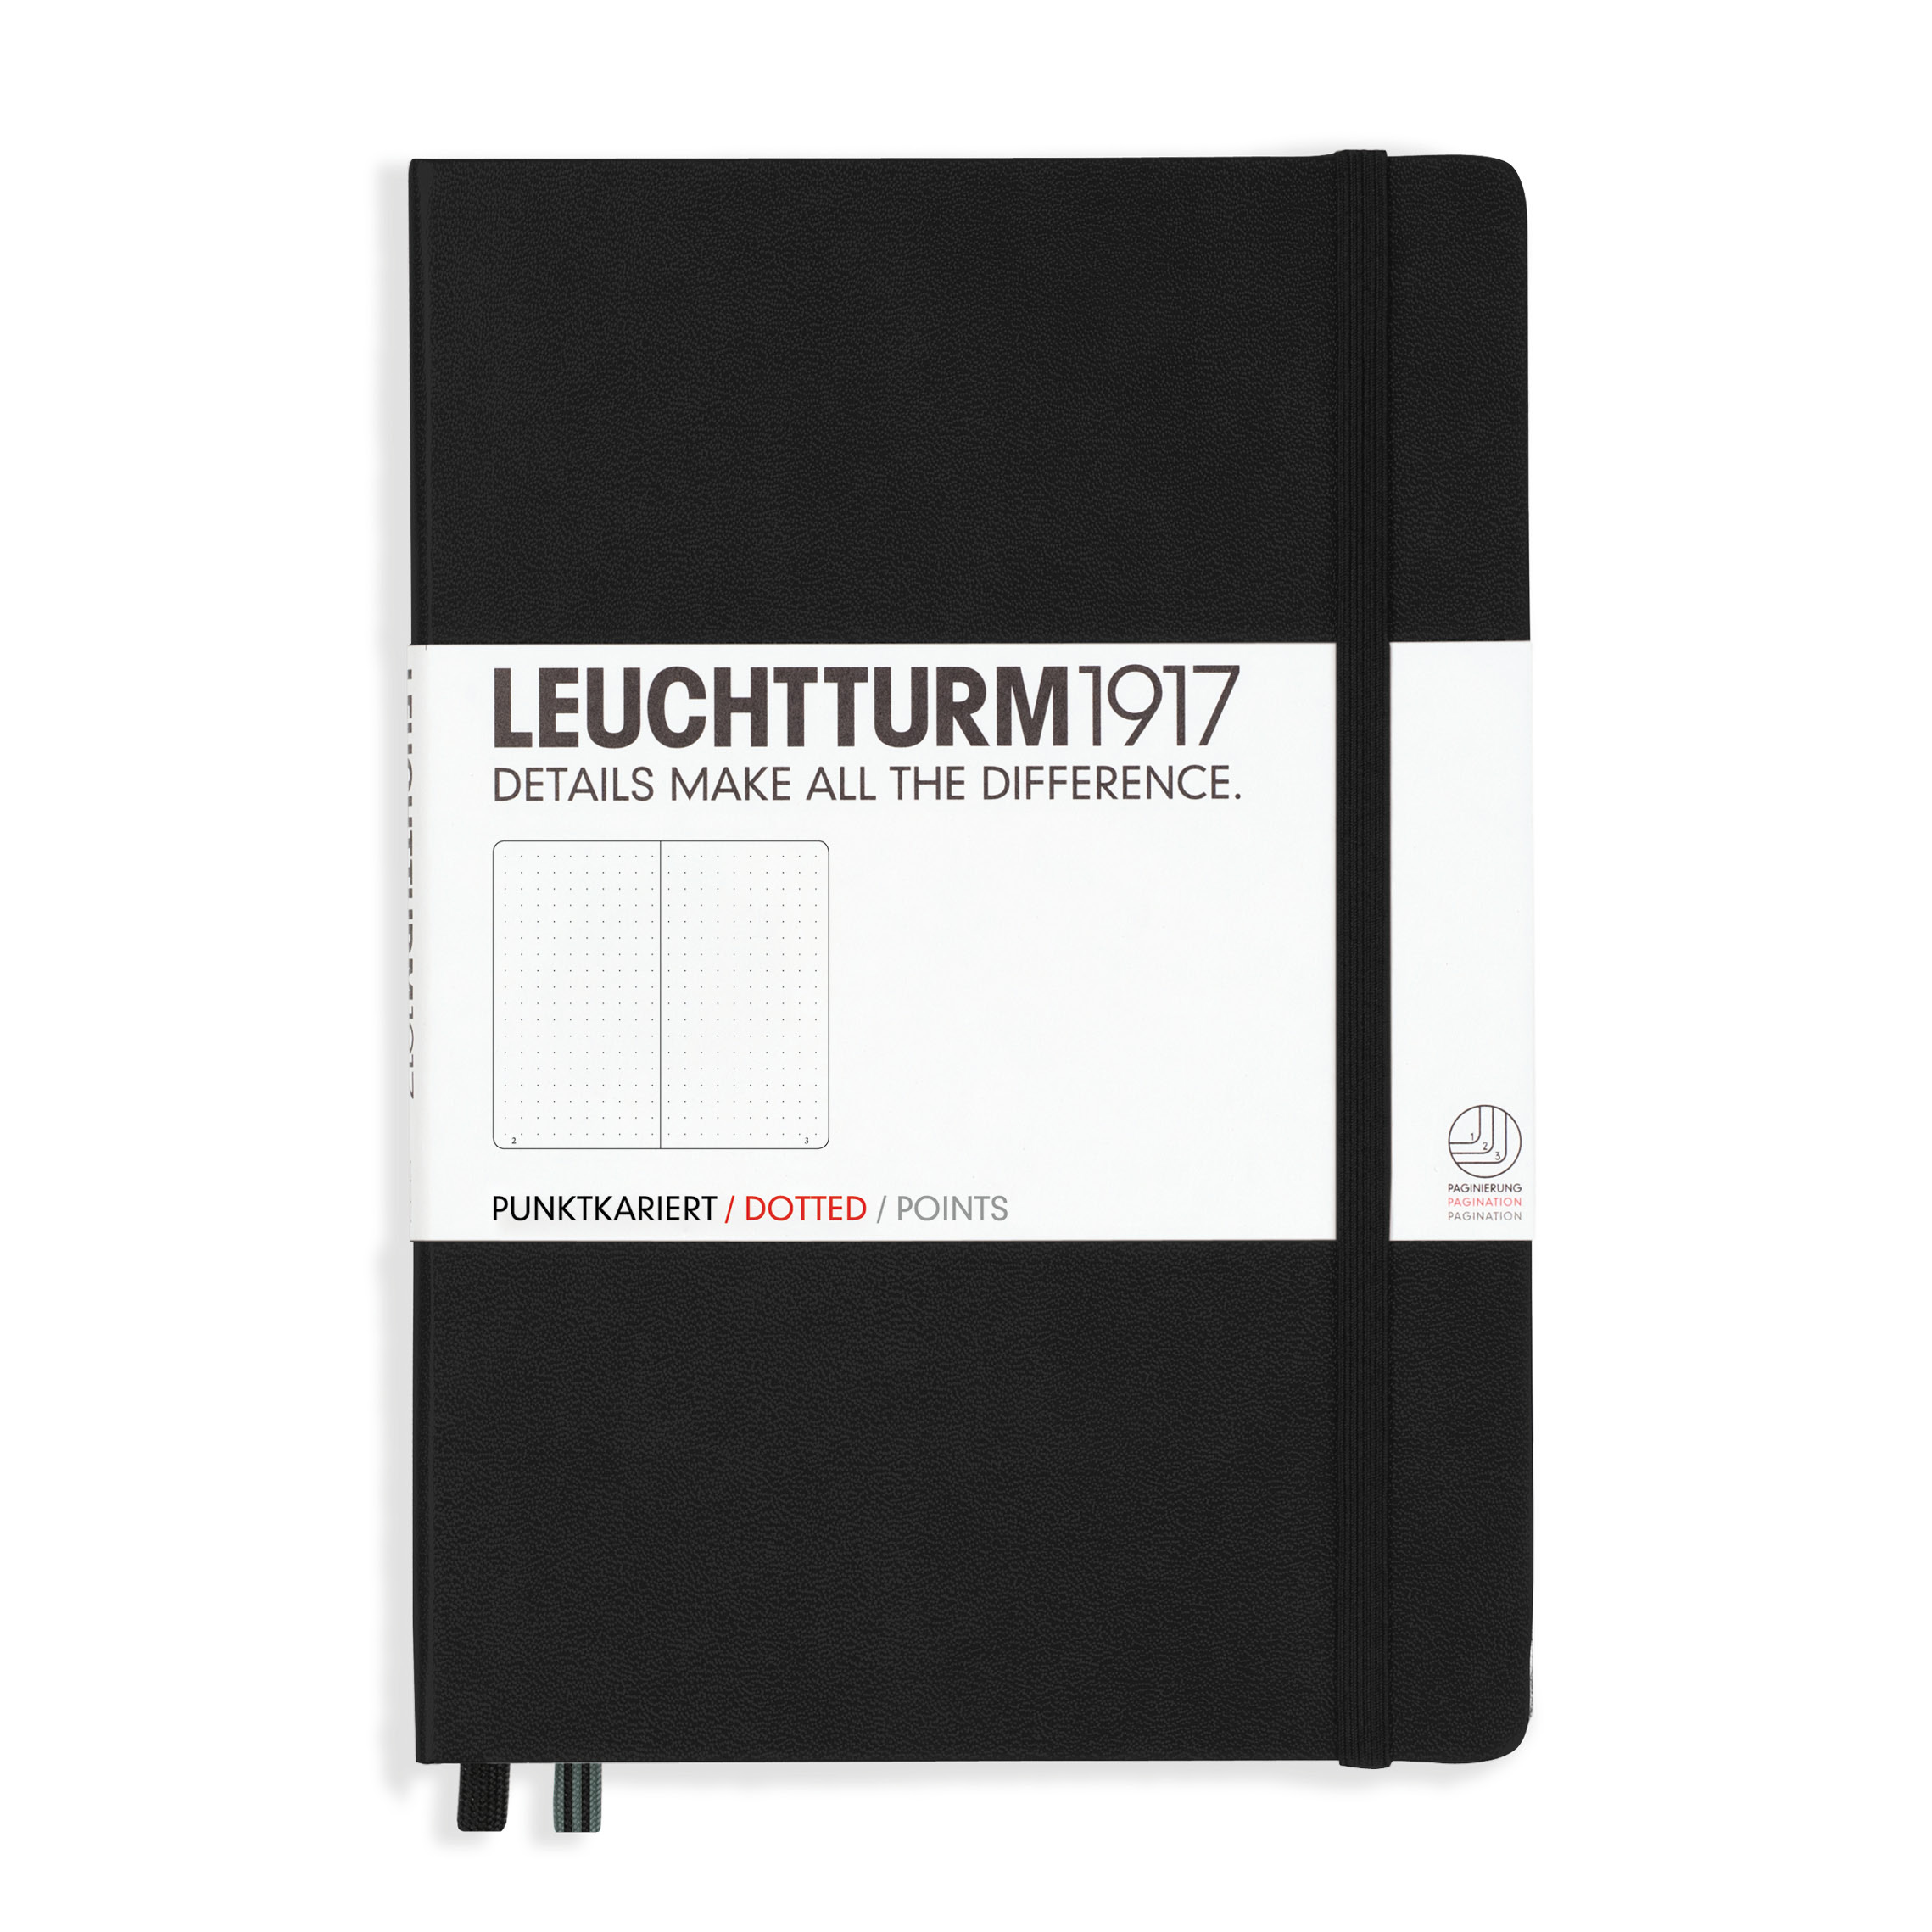 A5 Marine Leuchtturm1917 357719 Wochenkalender und Notizbuch 2019 Deutsch Medium